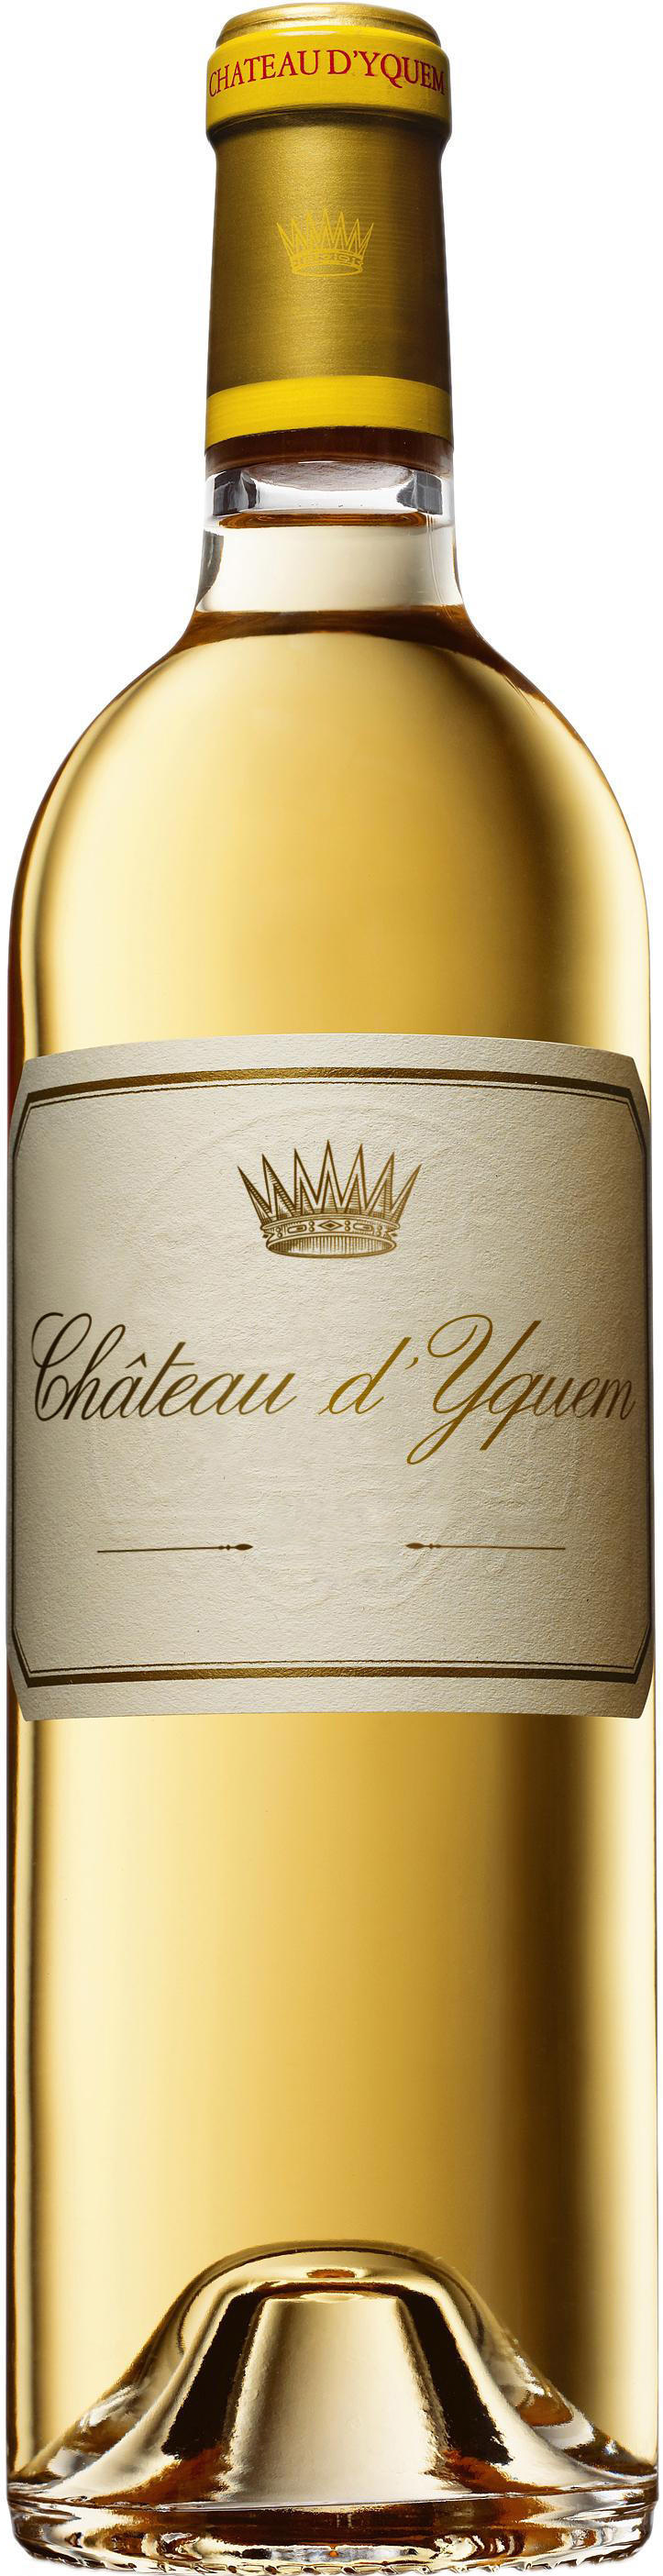 Купить Chateau d`Yquem Sauternes в Москве